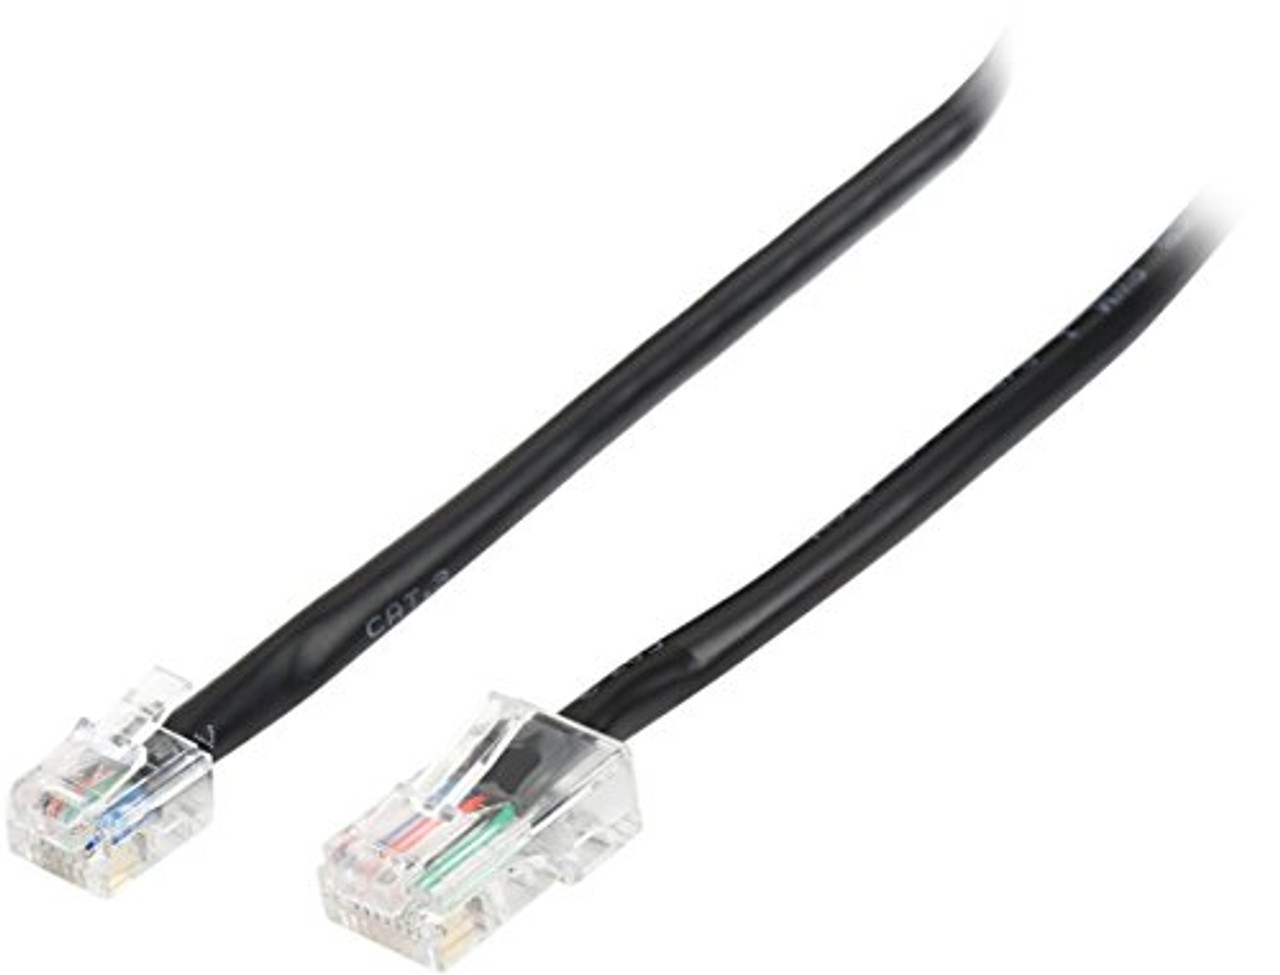 Micros Epson IDN Cable 300319-001 (10 Ft.) RJ45-RJ12 Micros Compatible Printer Cable - Epson TM-T88, TM-u200, TM-u220b + Many More